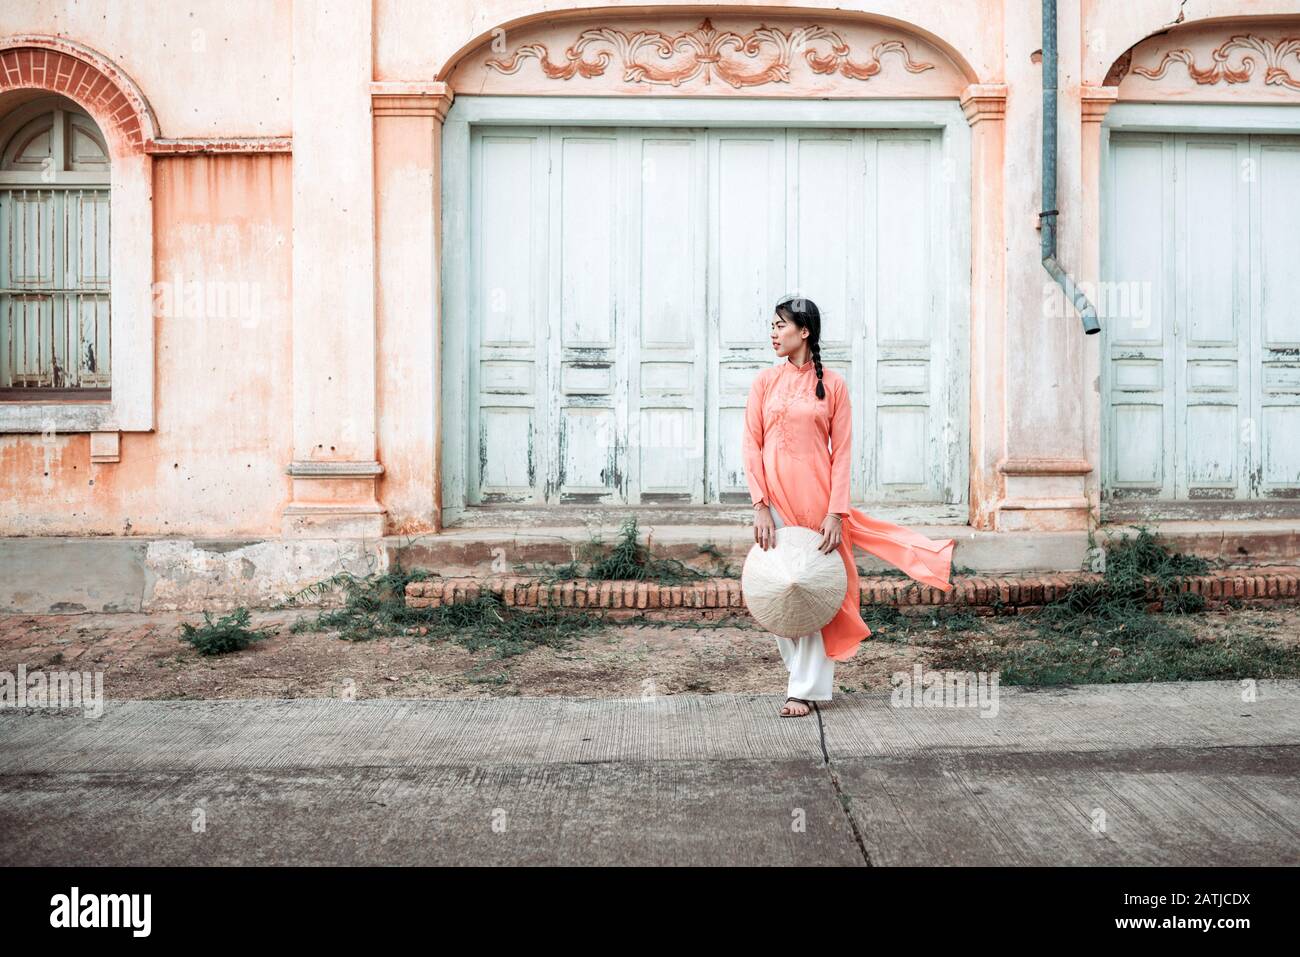 La jeune femme est gaie avec le style français historique de la maison. Dans La Province De Sakon Nakhon, Thaïlande Banque D'Images